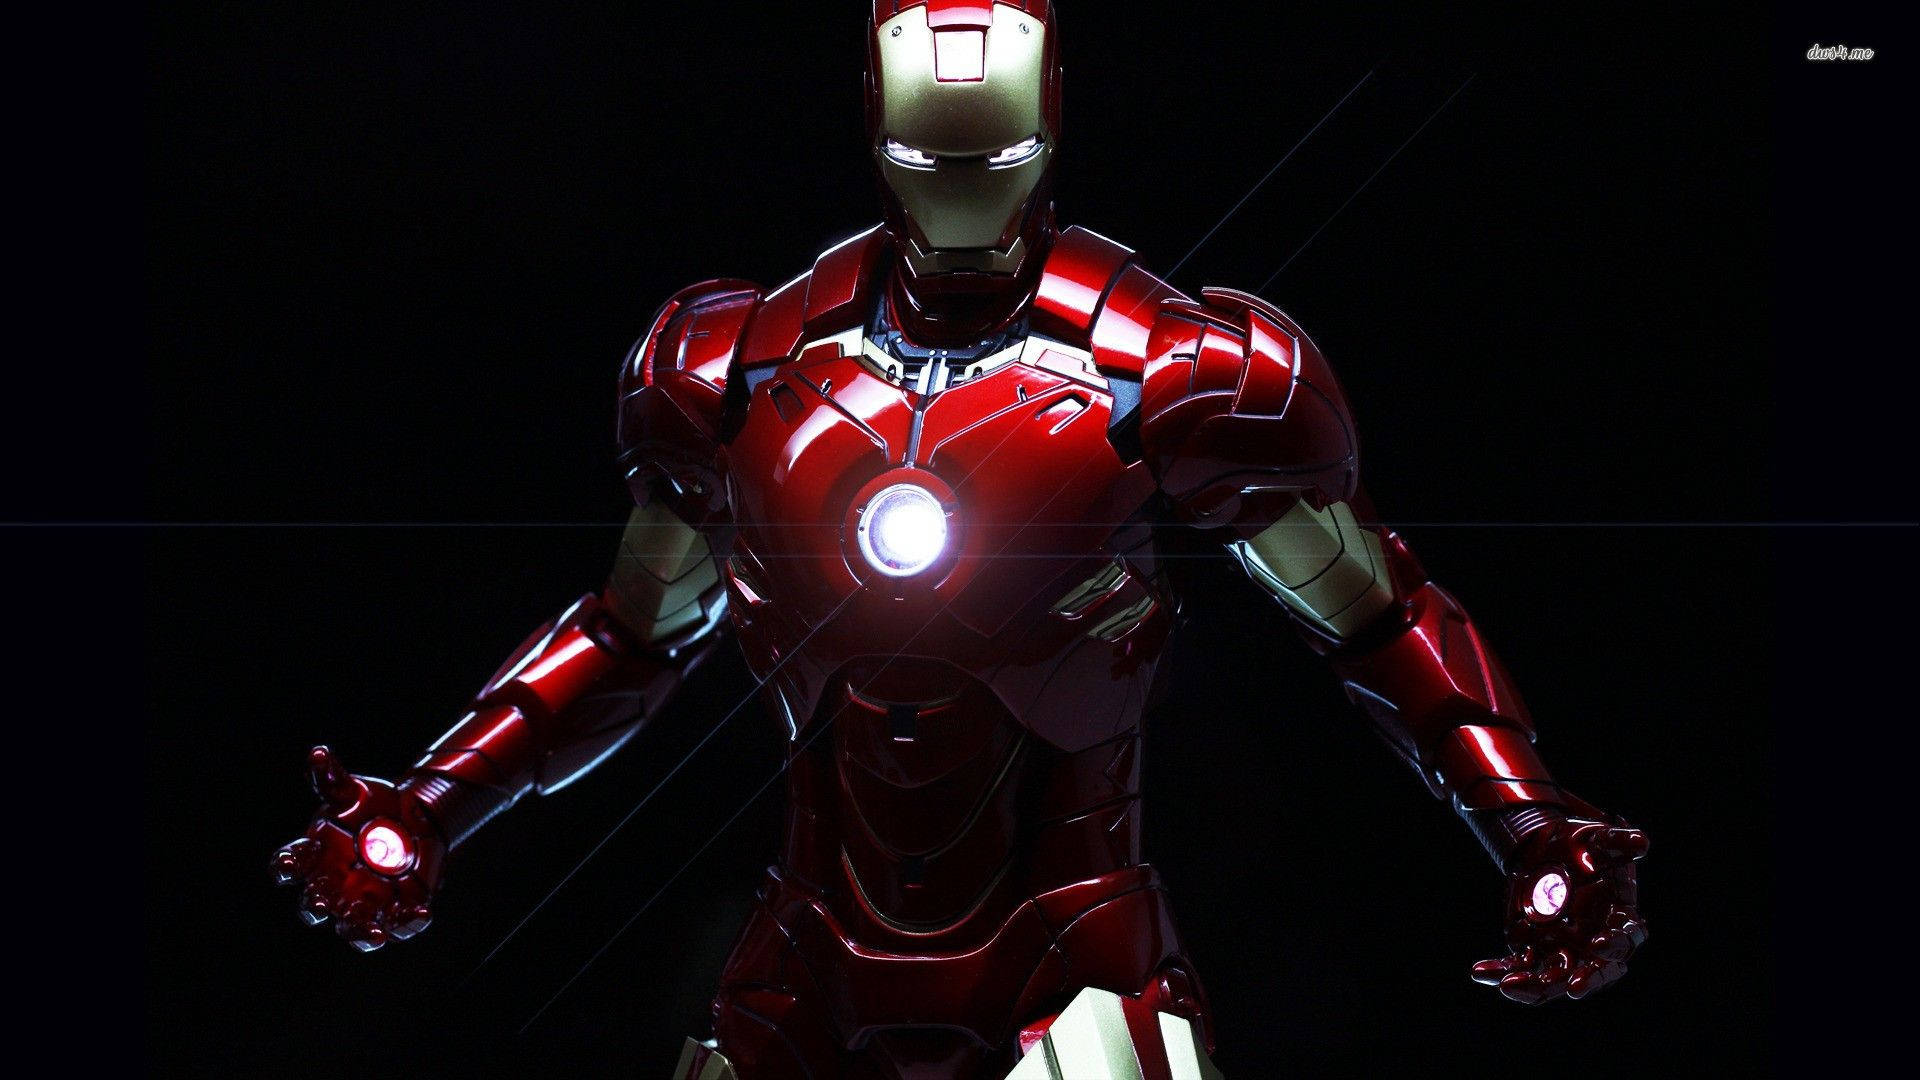 Ironman Mark 3, L'armatura Robotica Più Avanzata Al Mondo Salva Vite! Sfondo